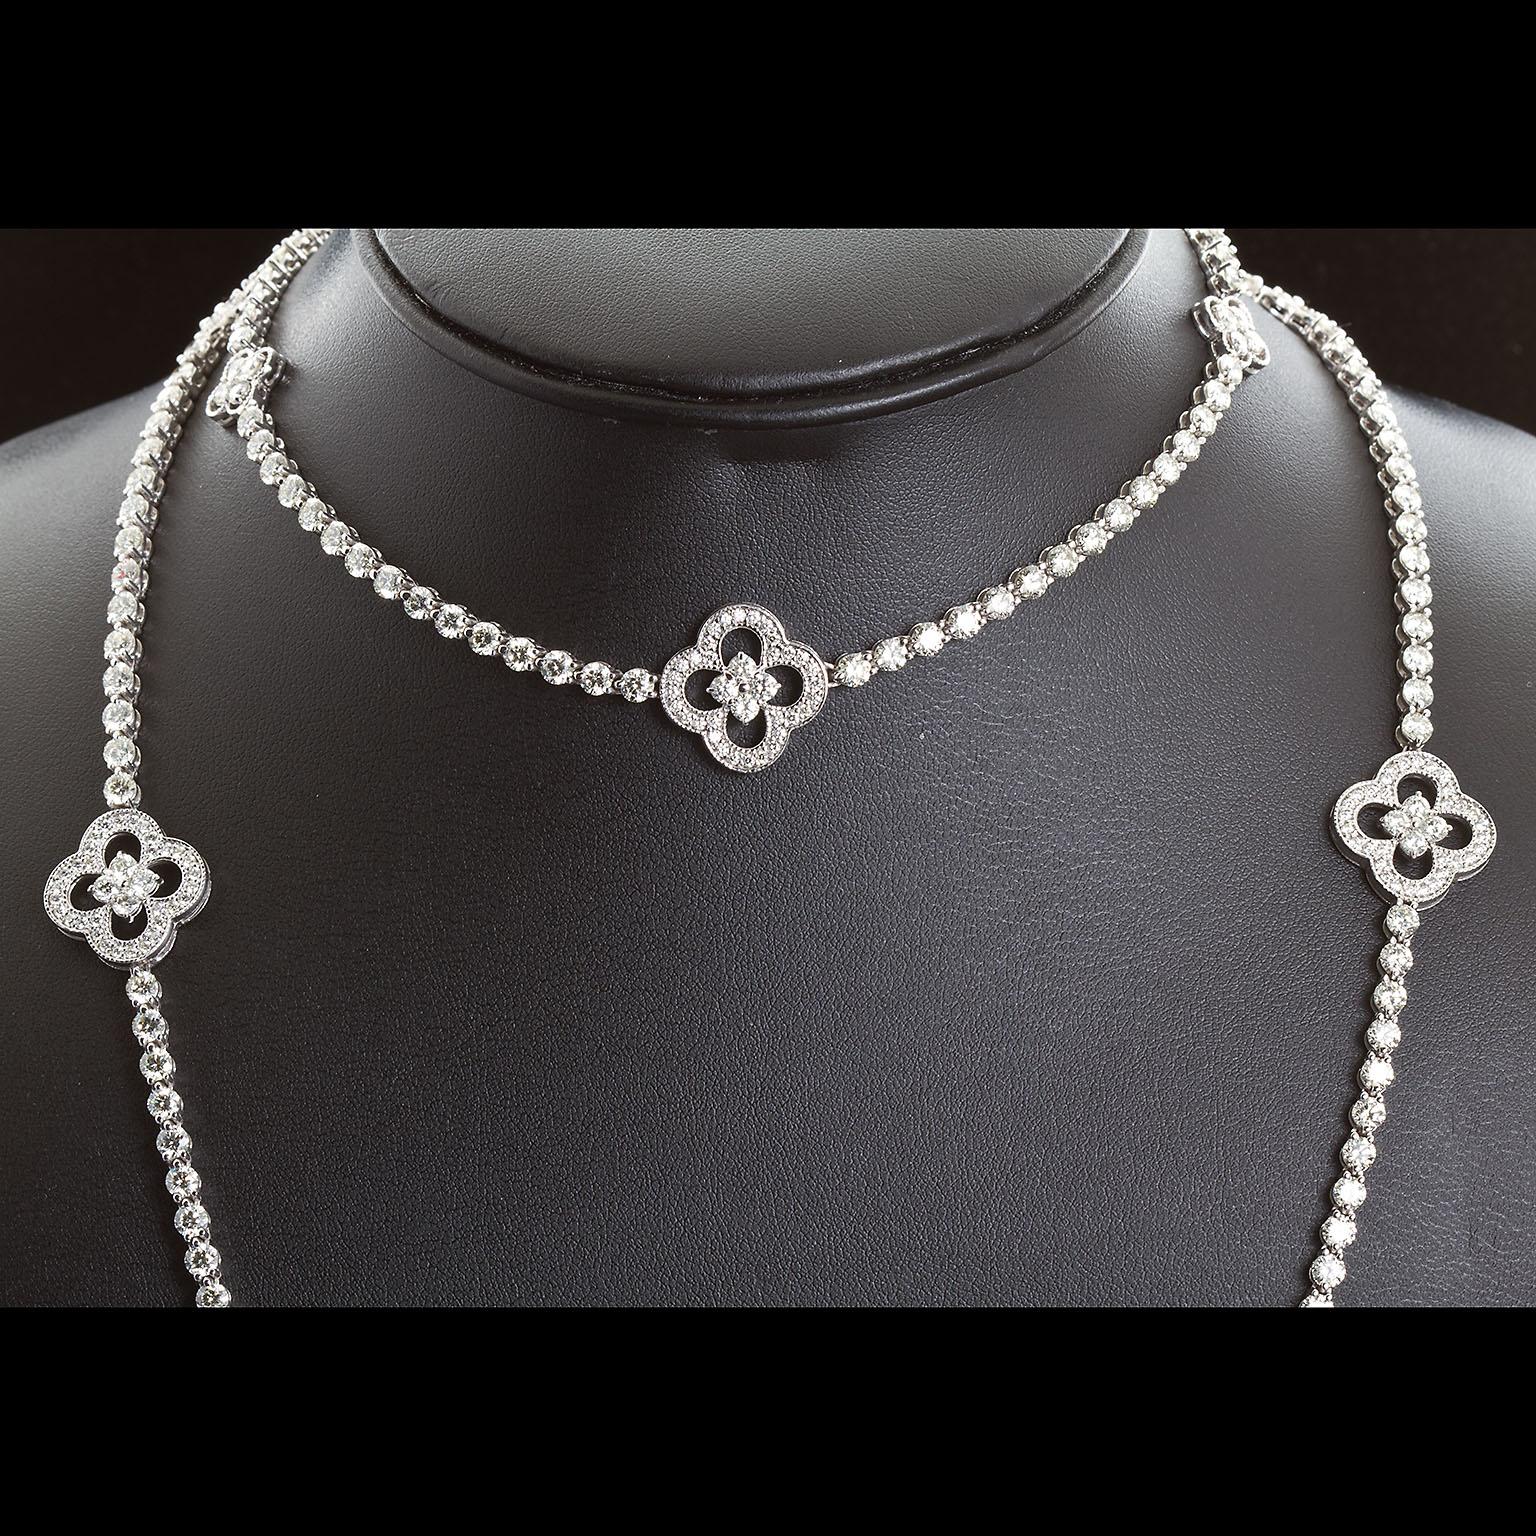 4 carat diamond necklace